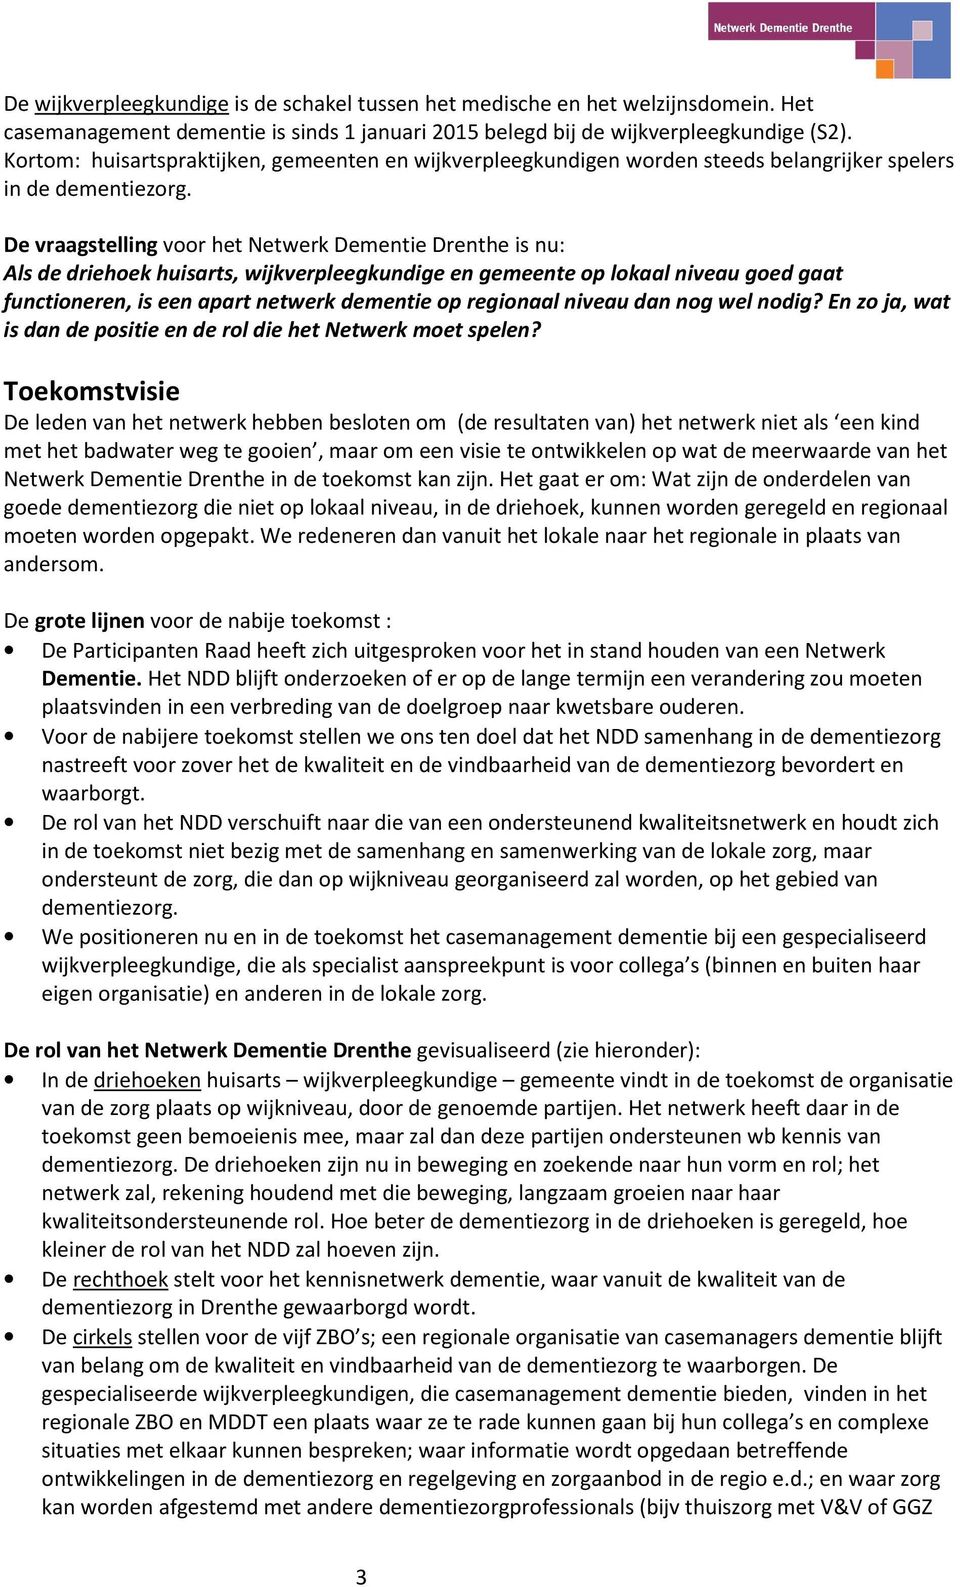 De vraagstelling voor het Netwerk Dementie Drenthe is nu: Als de driehoek huisarts, wijkverpleegkundige en gemeente op lokaal niveau goed gaat functioneren, is een apart netwerk dementie op regionaal